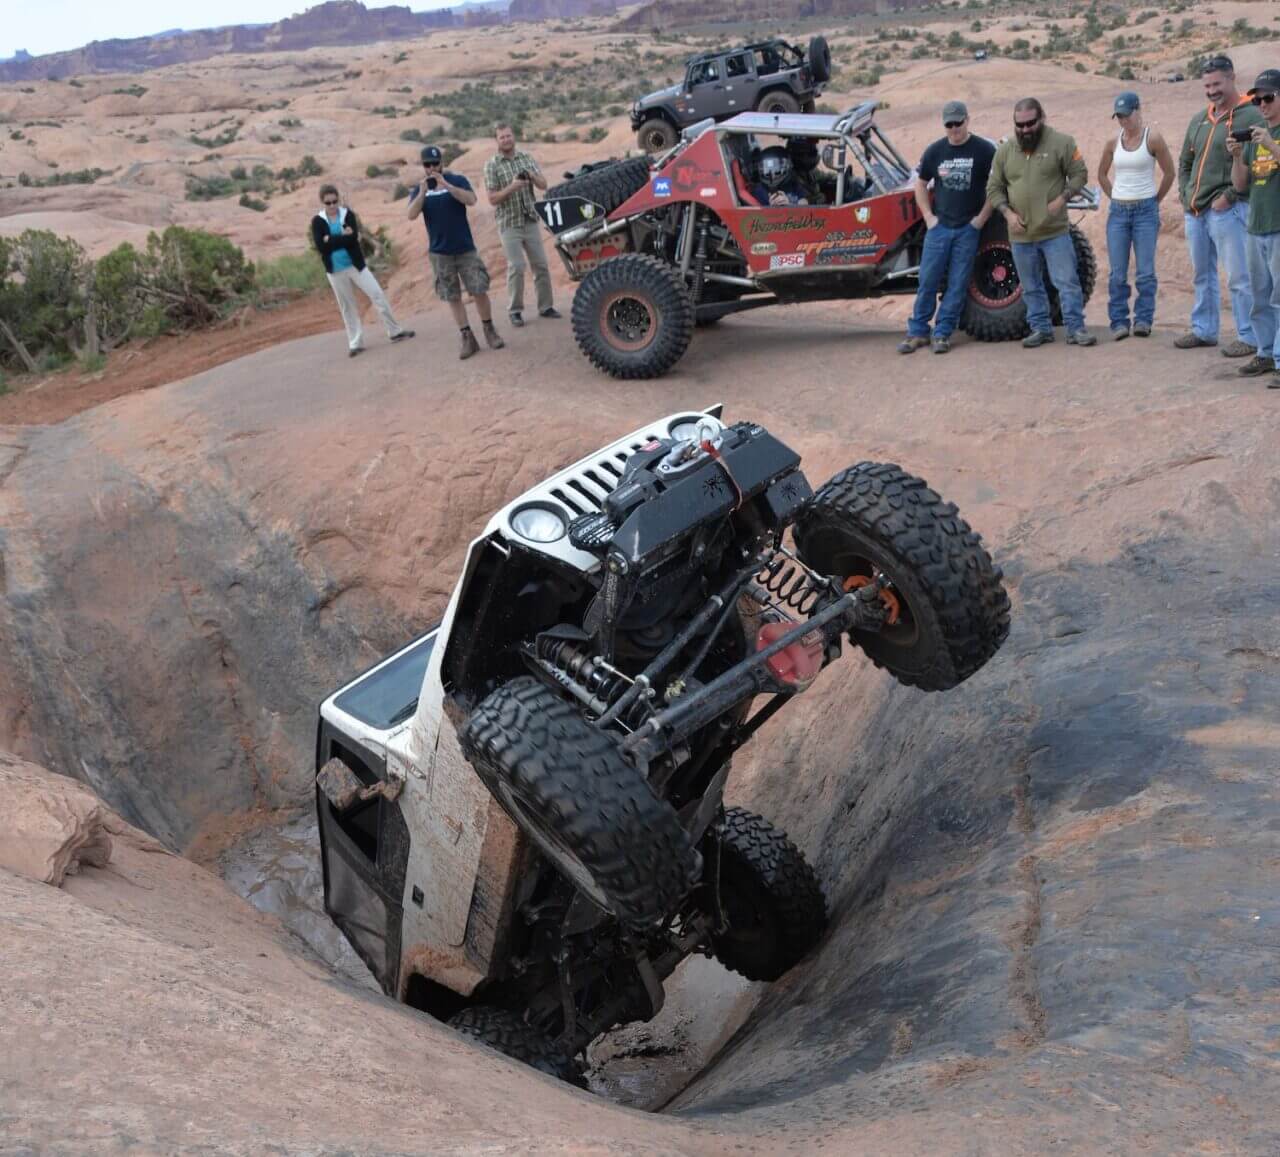 02 Hells Revenge Mickys Hot Tub Moab Easter Jeep Safari